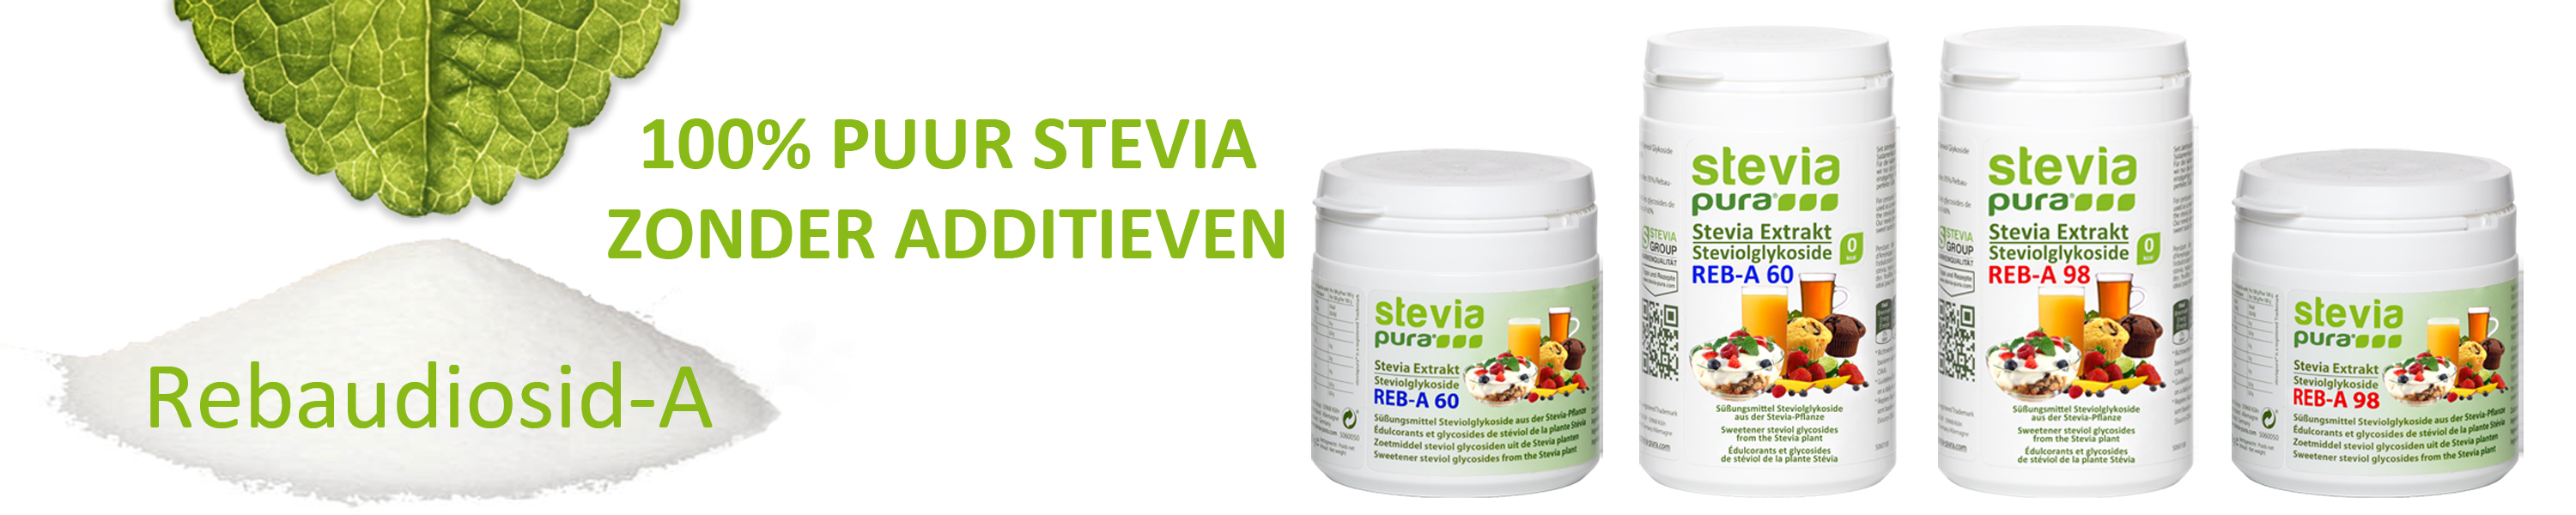 Koop 100% Puur Stevia zonder additieven rebaudioside A98...